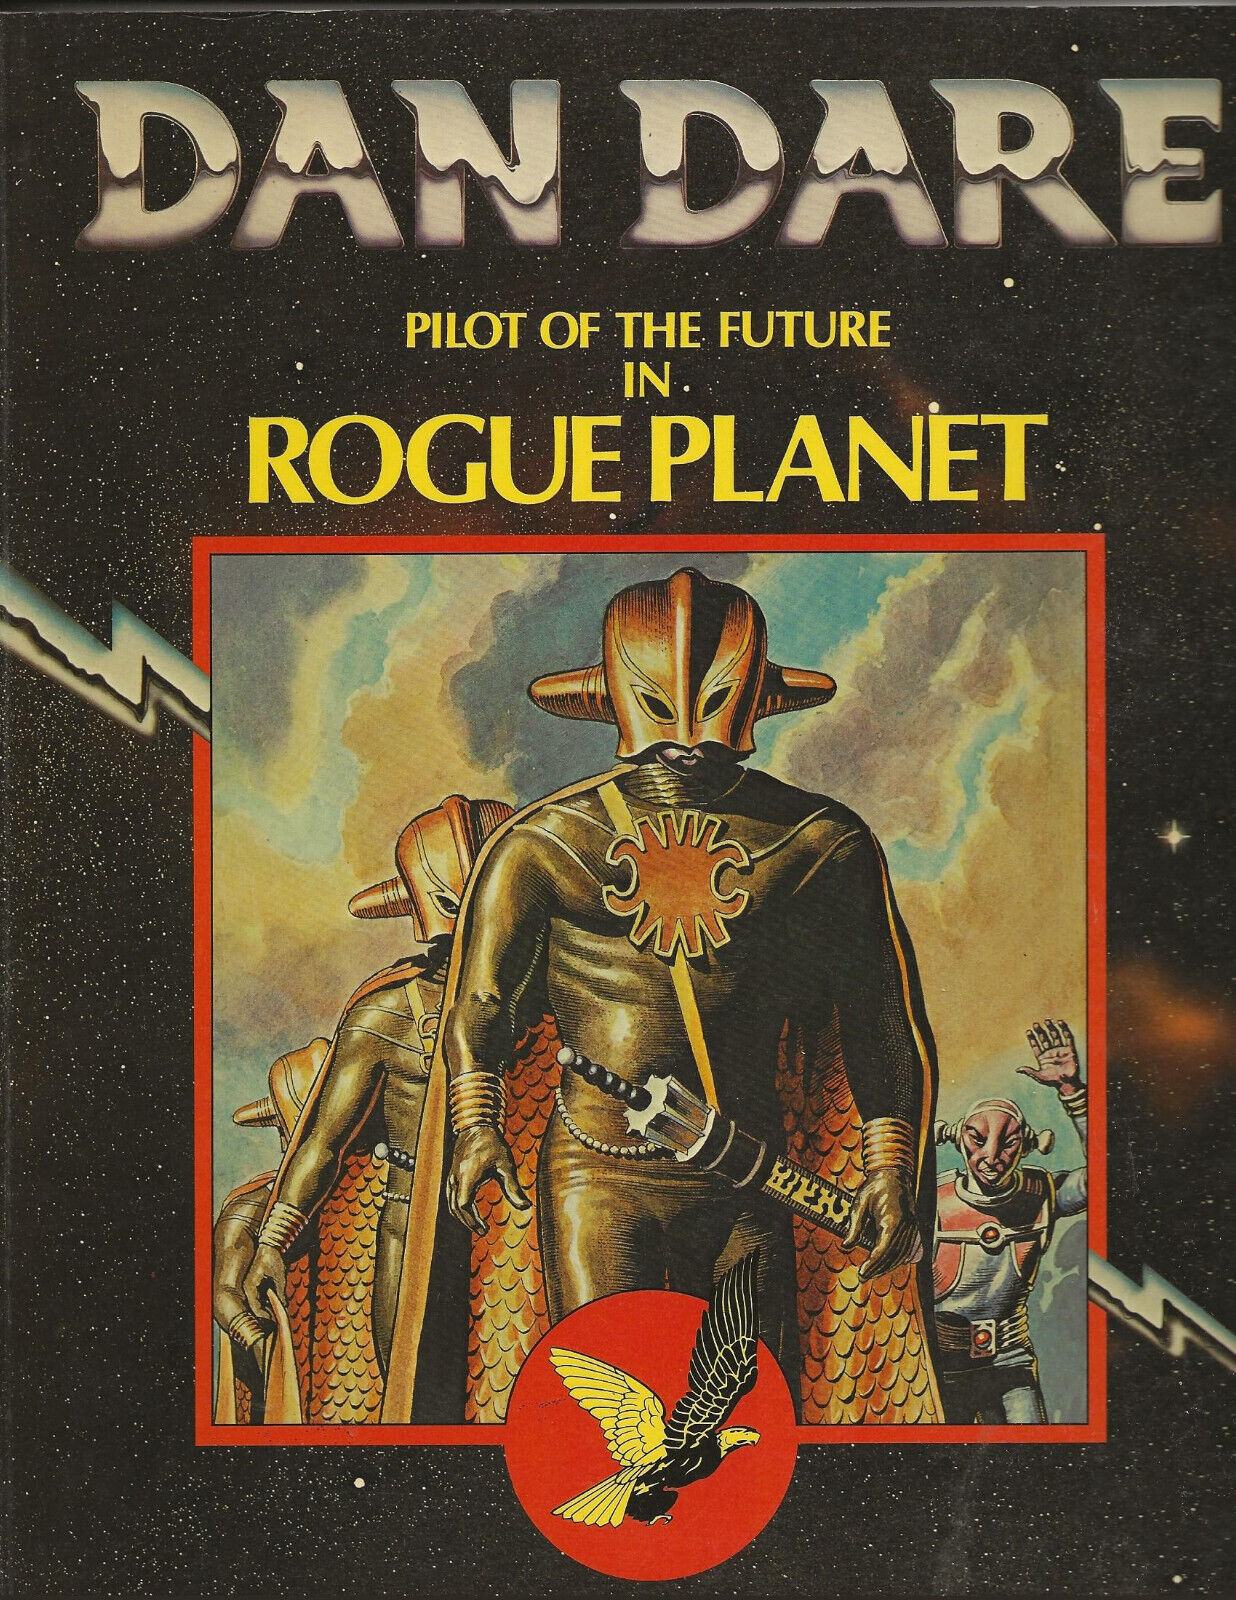 DAN DARE ROGUE PLANET Frank Hampson (Dragon's Dream, 1980) paperback